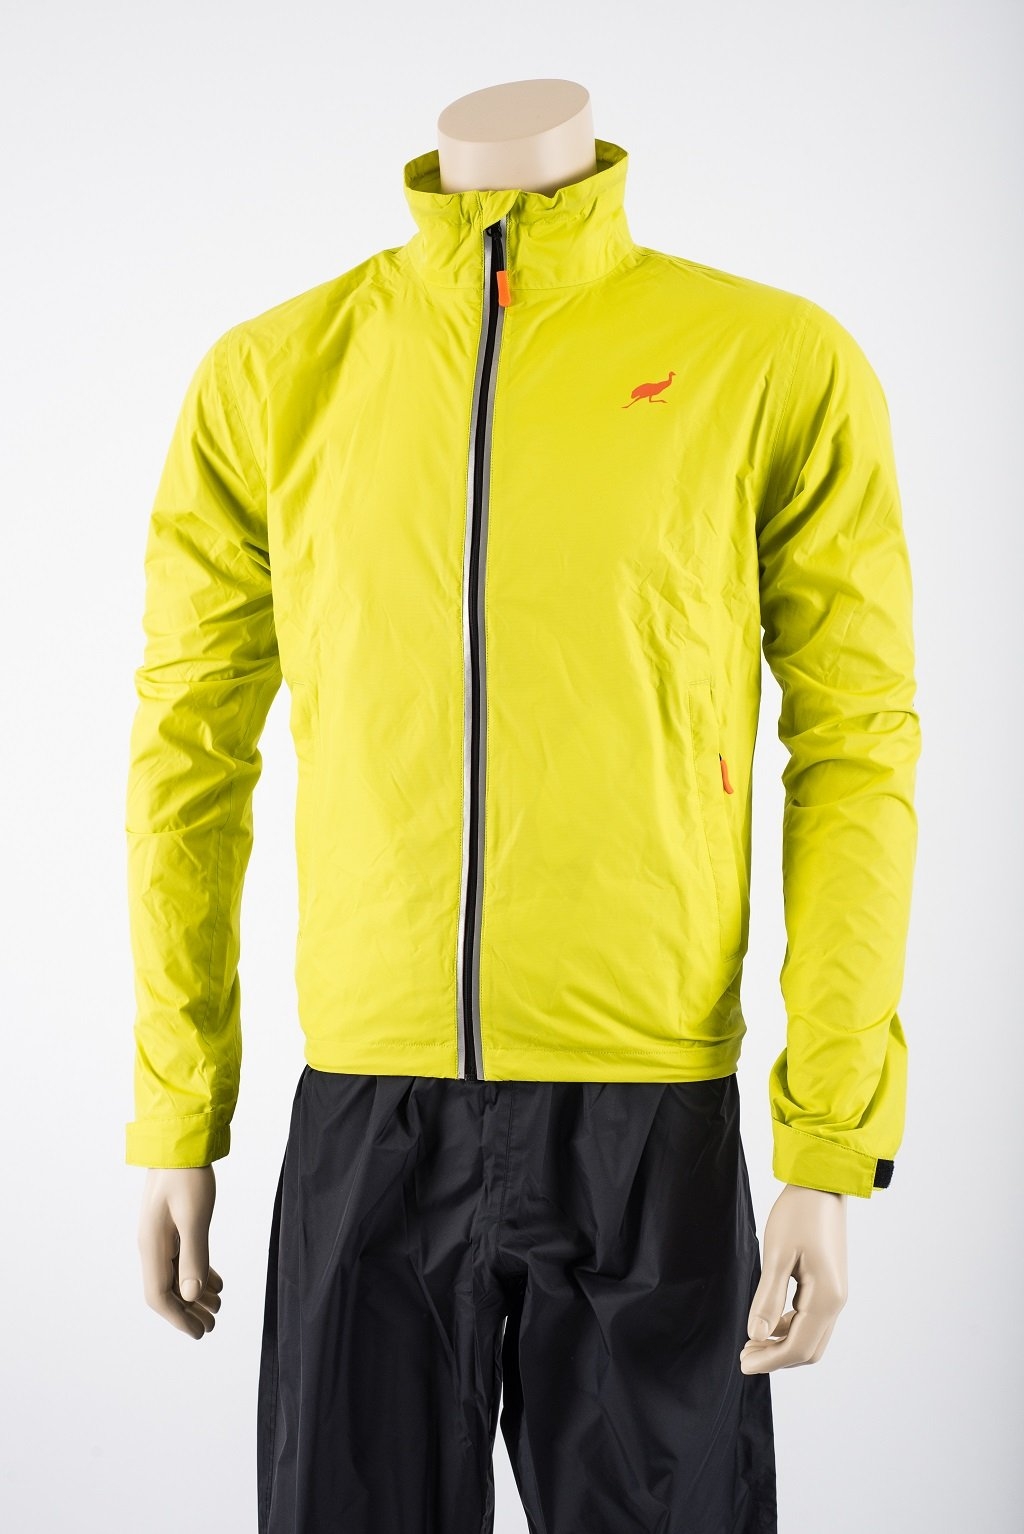 Emu Waterproof Cycling Jacket Yellow – XL